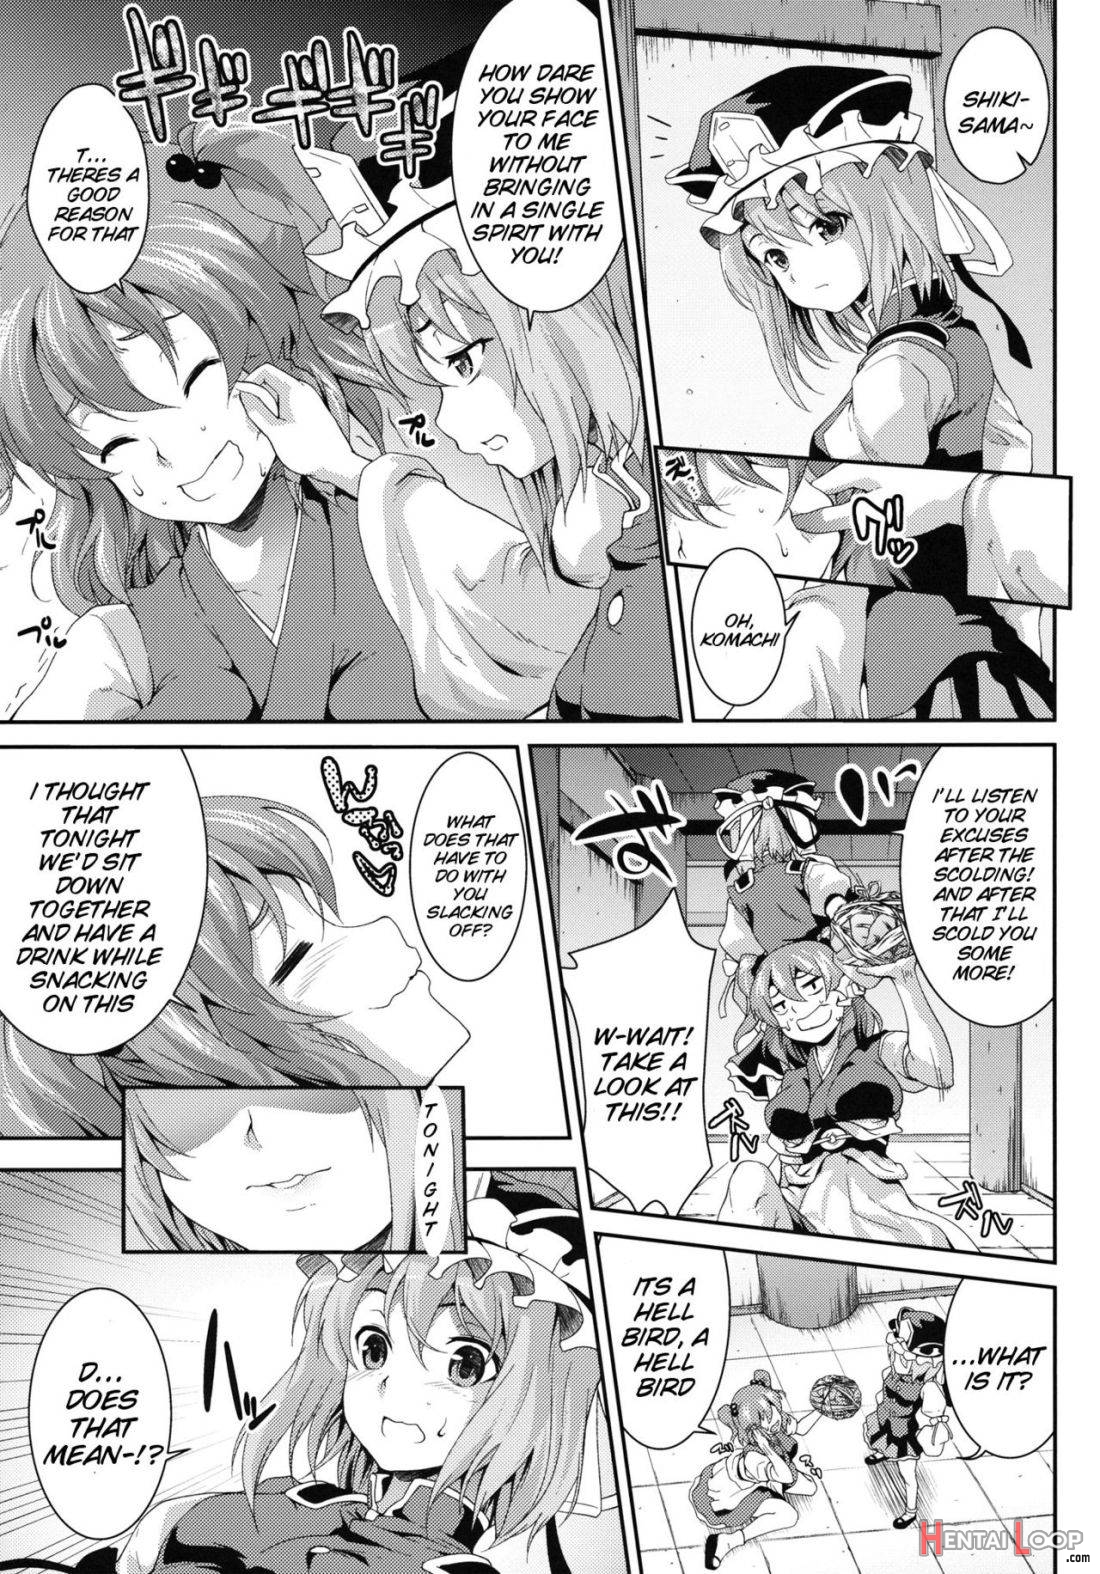 Komachi Sanmeguri page 4